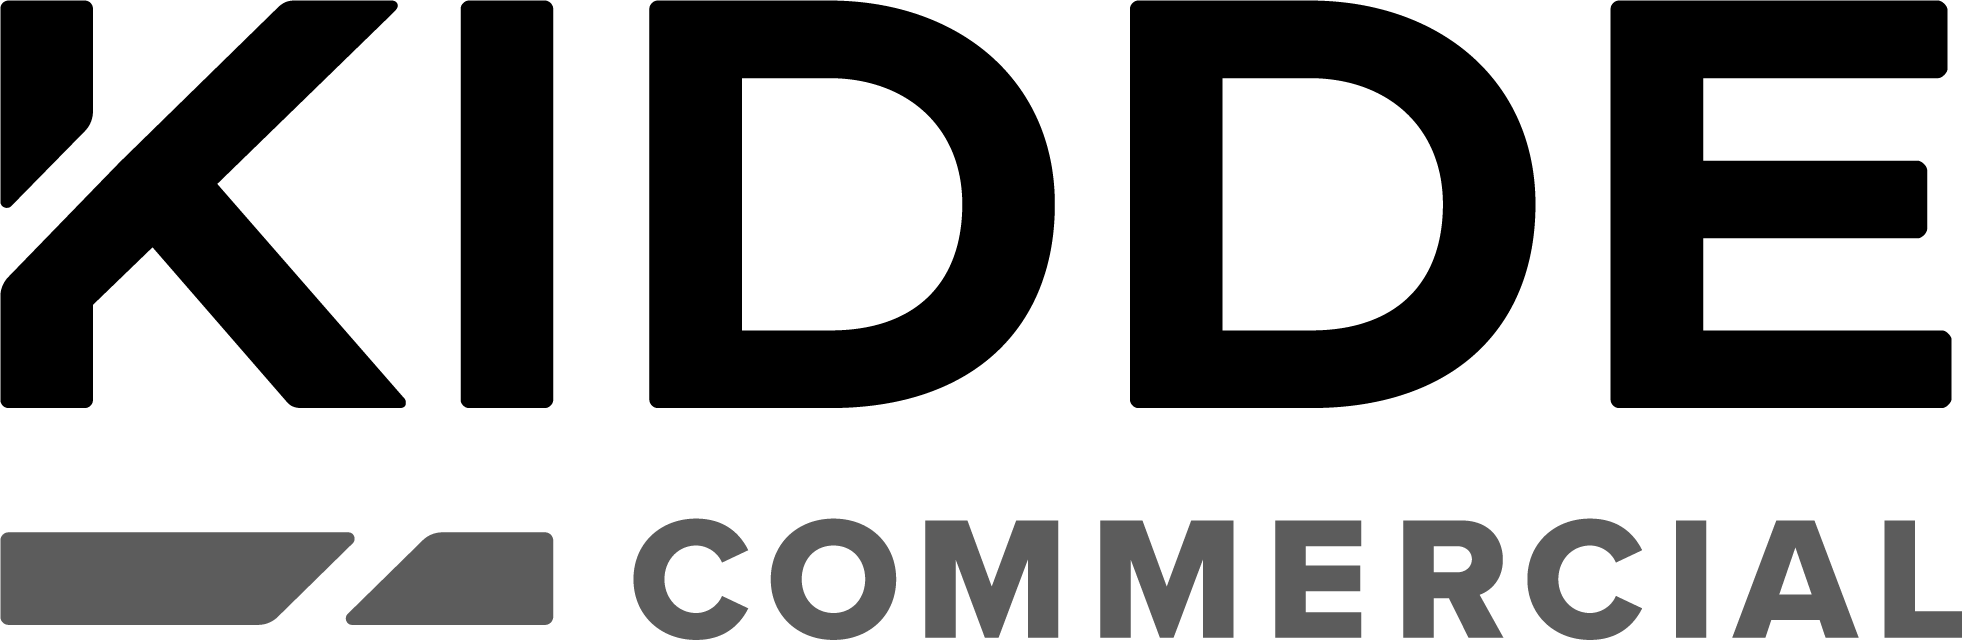 'Kidde Commercial Logo'